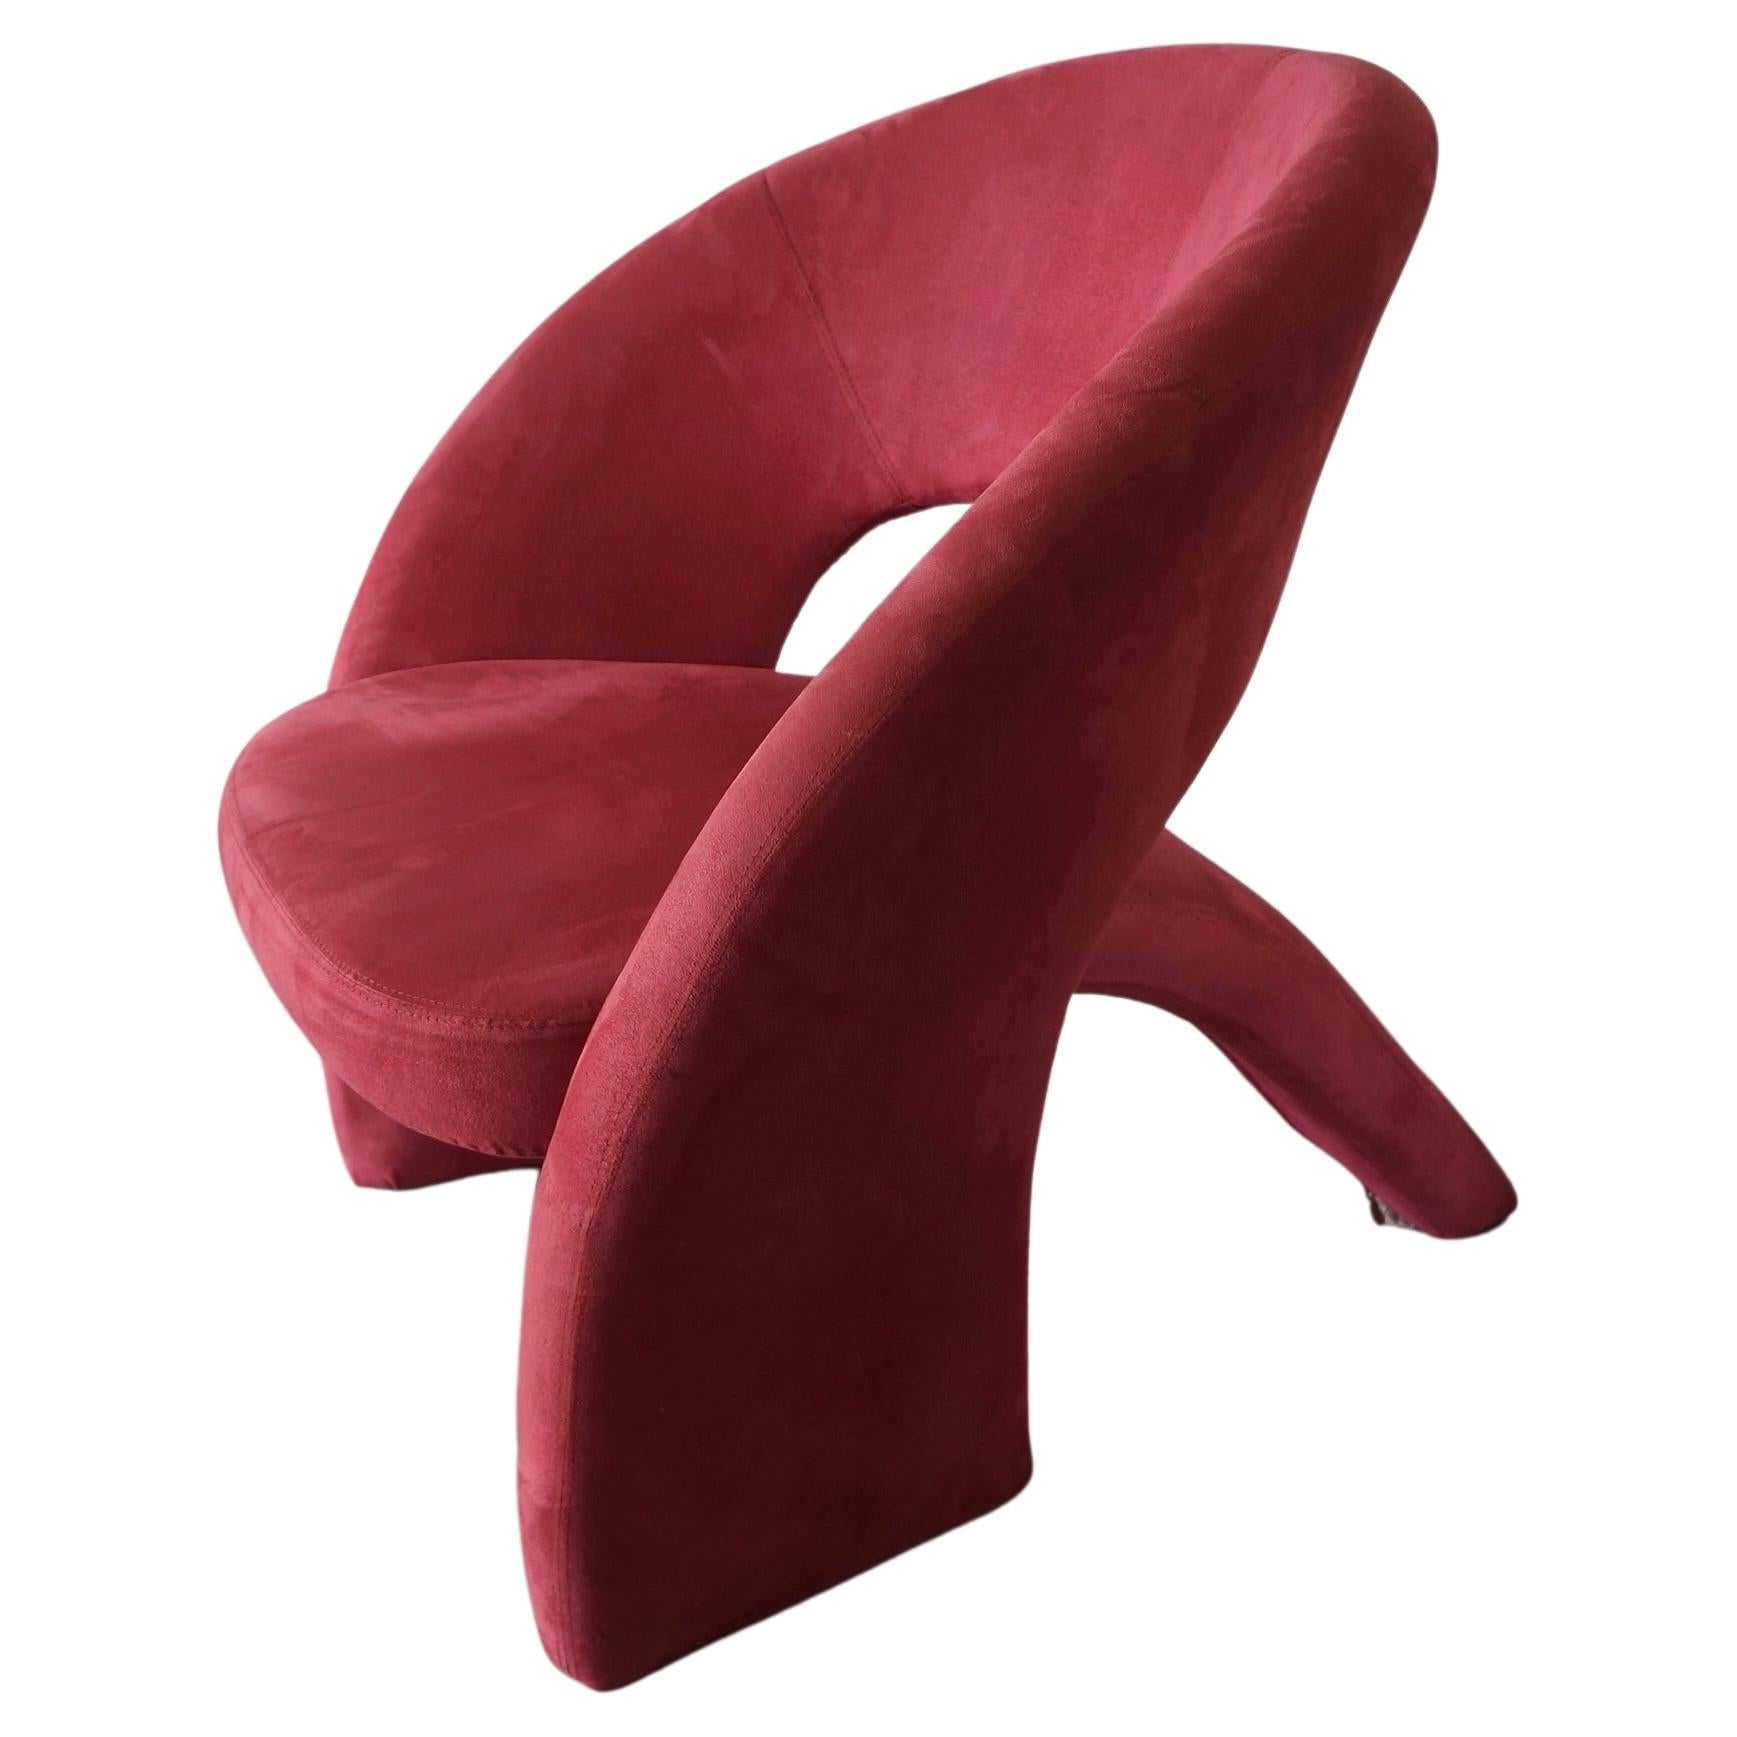 Magnifique sculpture rose Jaymar
président. Cette chaise sculpturale définie par son
des lignes continues et un design angulaire. Il s'agit d'une pièce intemporelle qui rehausserait n'importe quel style de maison. Il est incroyablement confortable.